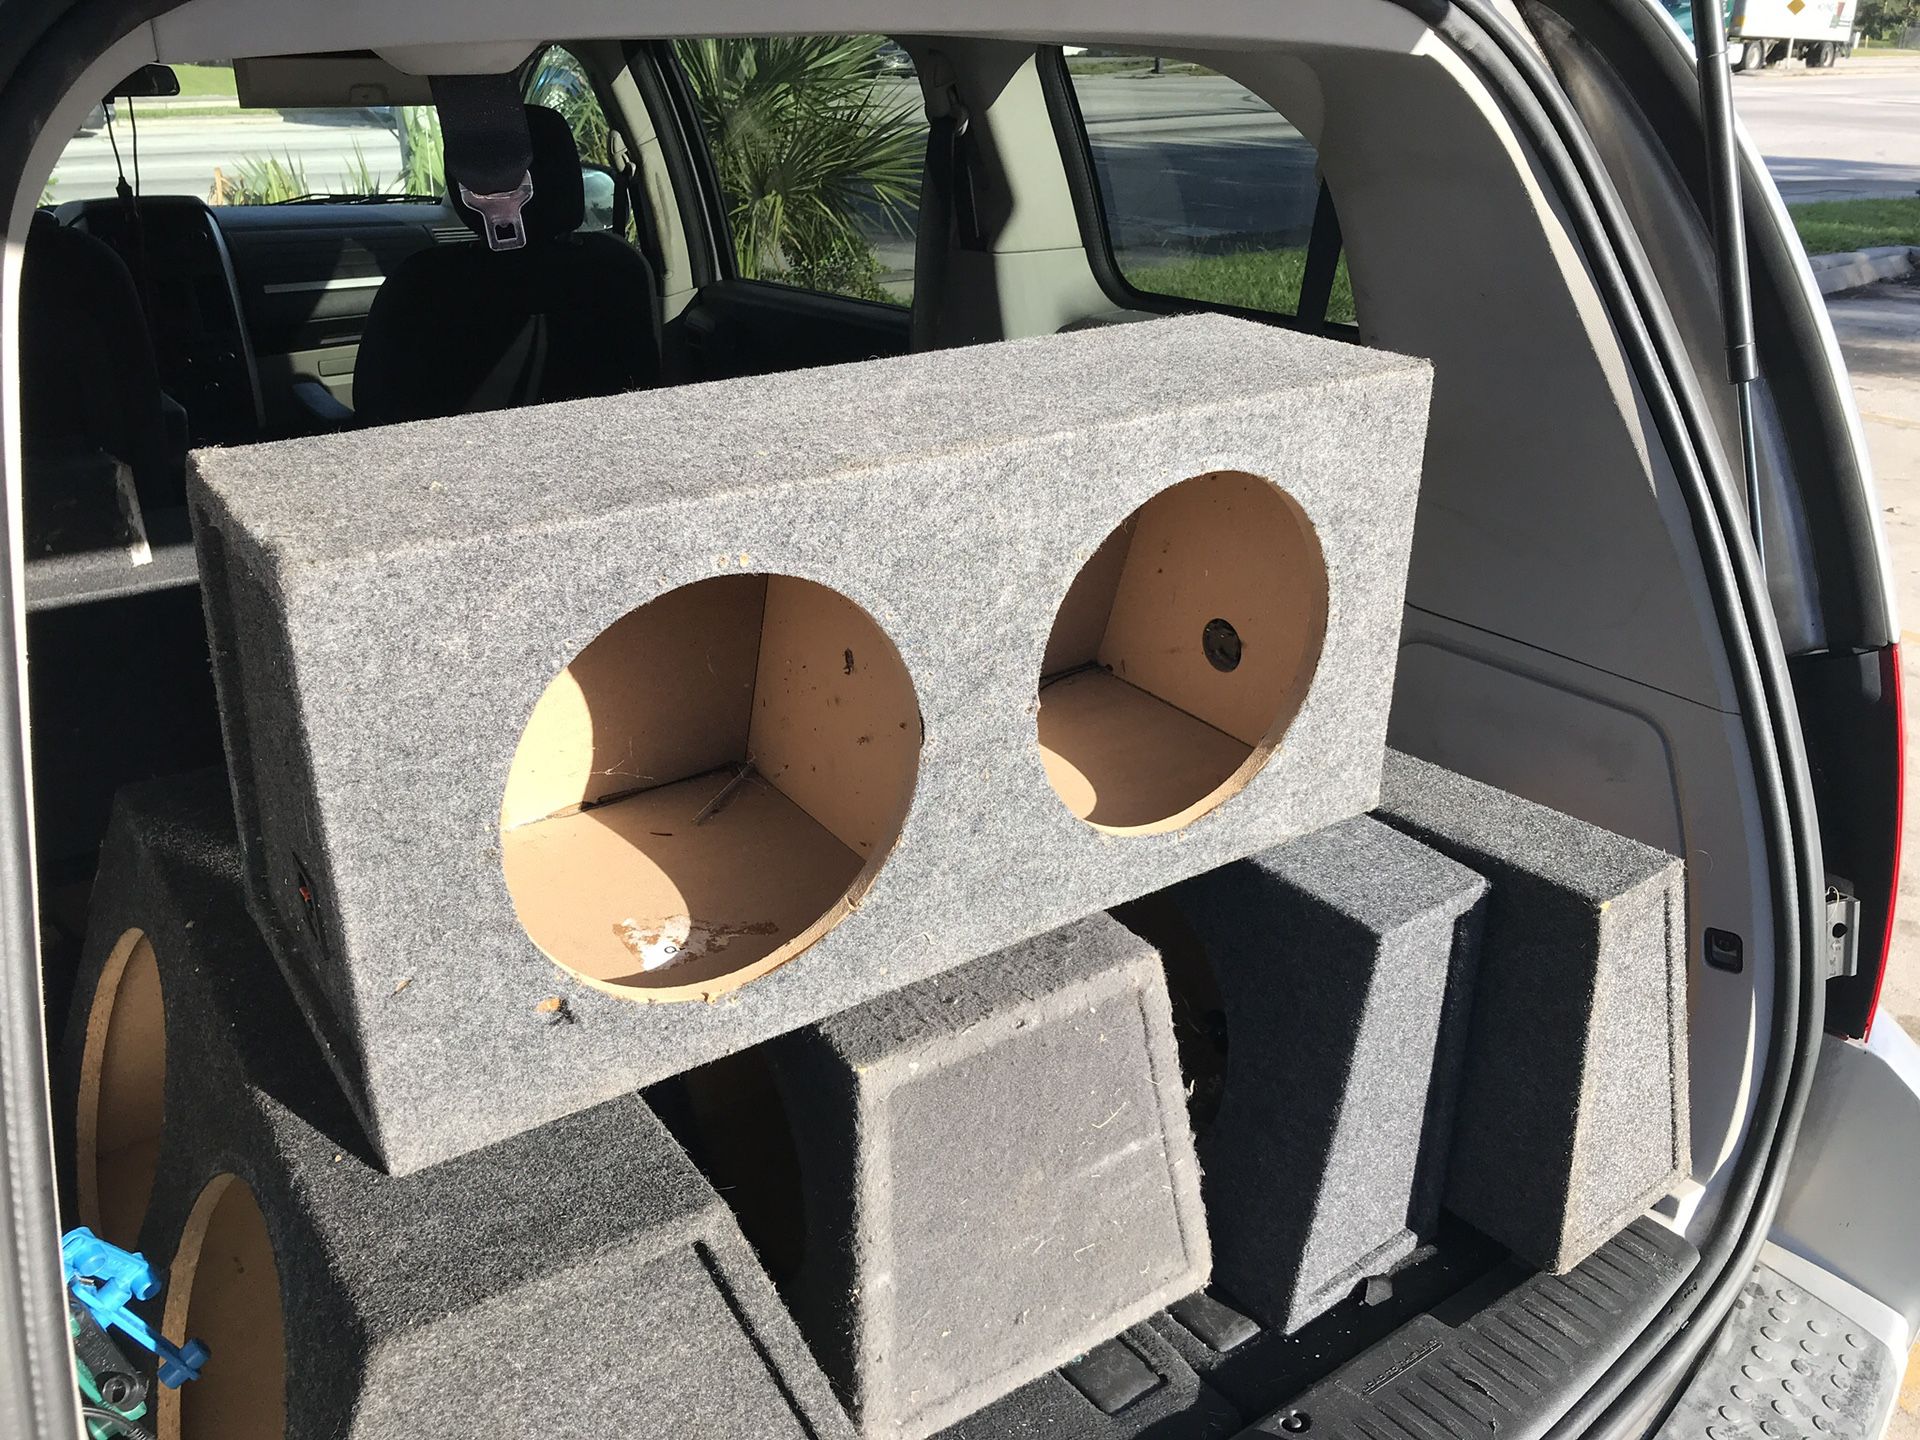 Speaker 12 box